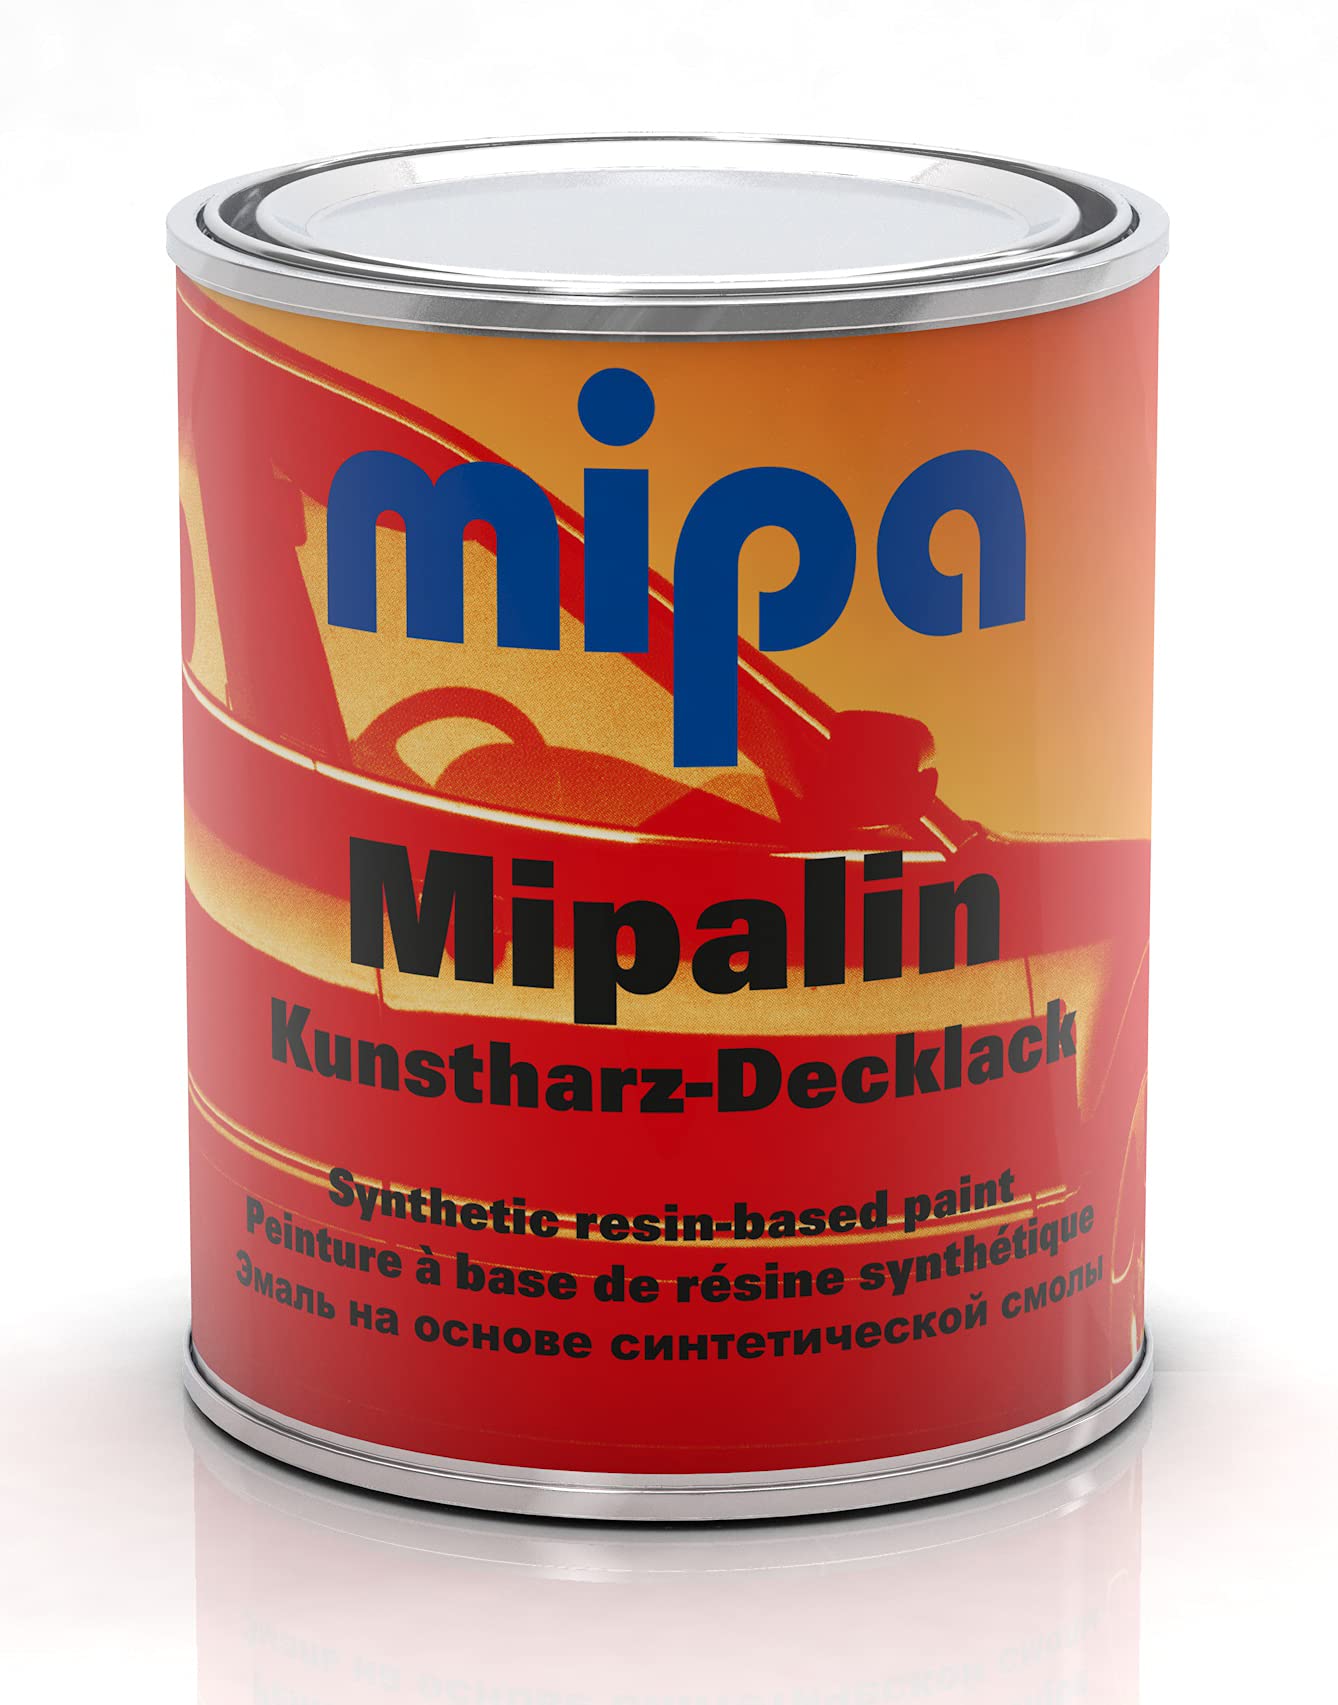 MIPA Mipalin Kunstharz Decklack RAL 5010 Enzianblau 1 Liter Autolack Lack von MIPA